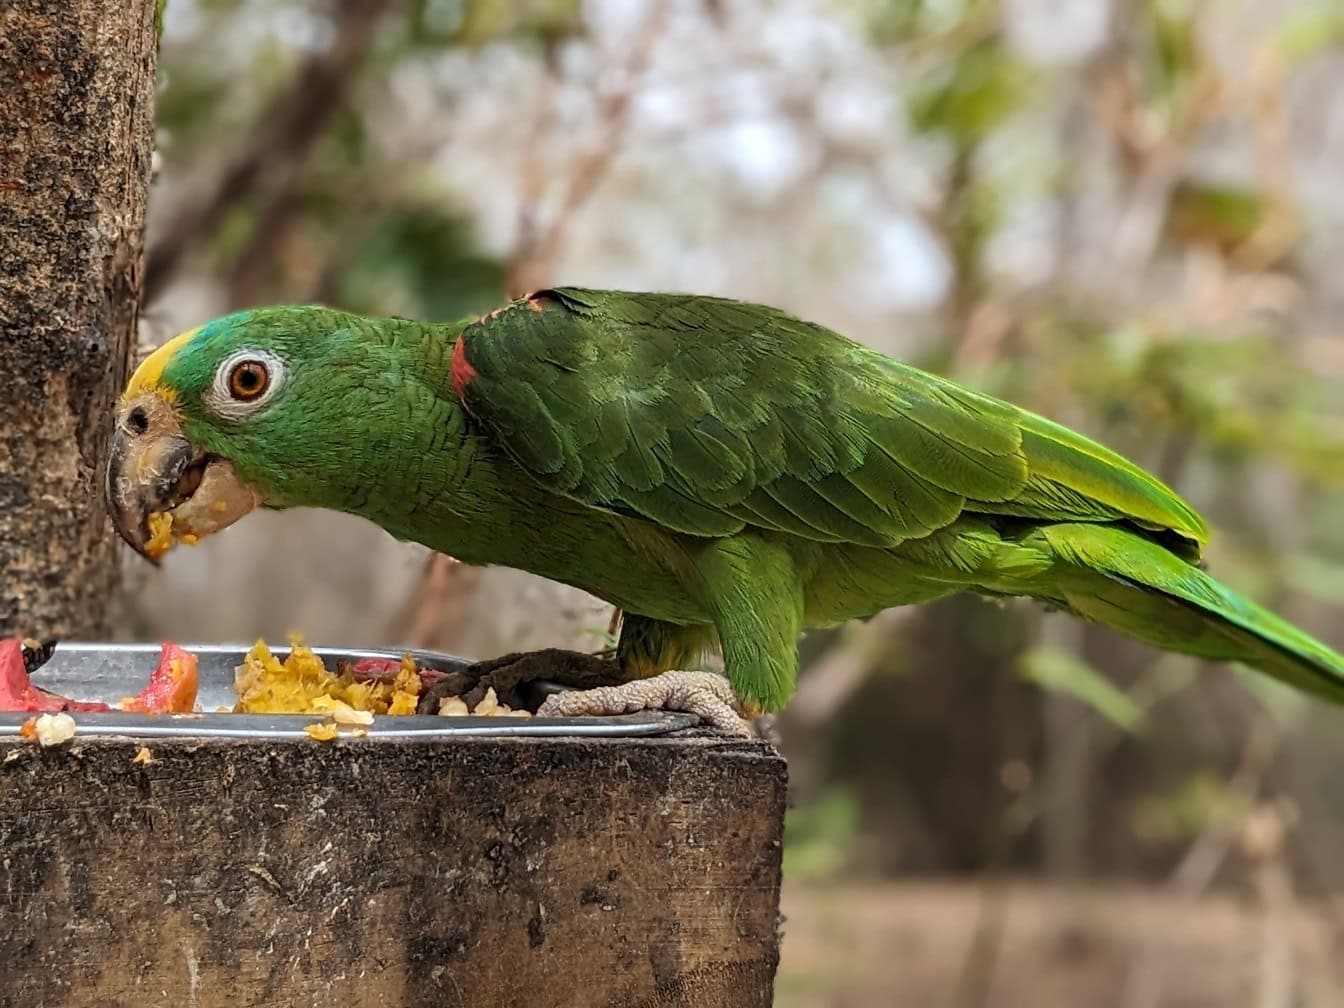 Panama amazon papegøyen også kjent som Panama gulhodet amazon fugl (Amazona ochrocephala panamensis) en grønn papegøye som spiser mat